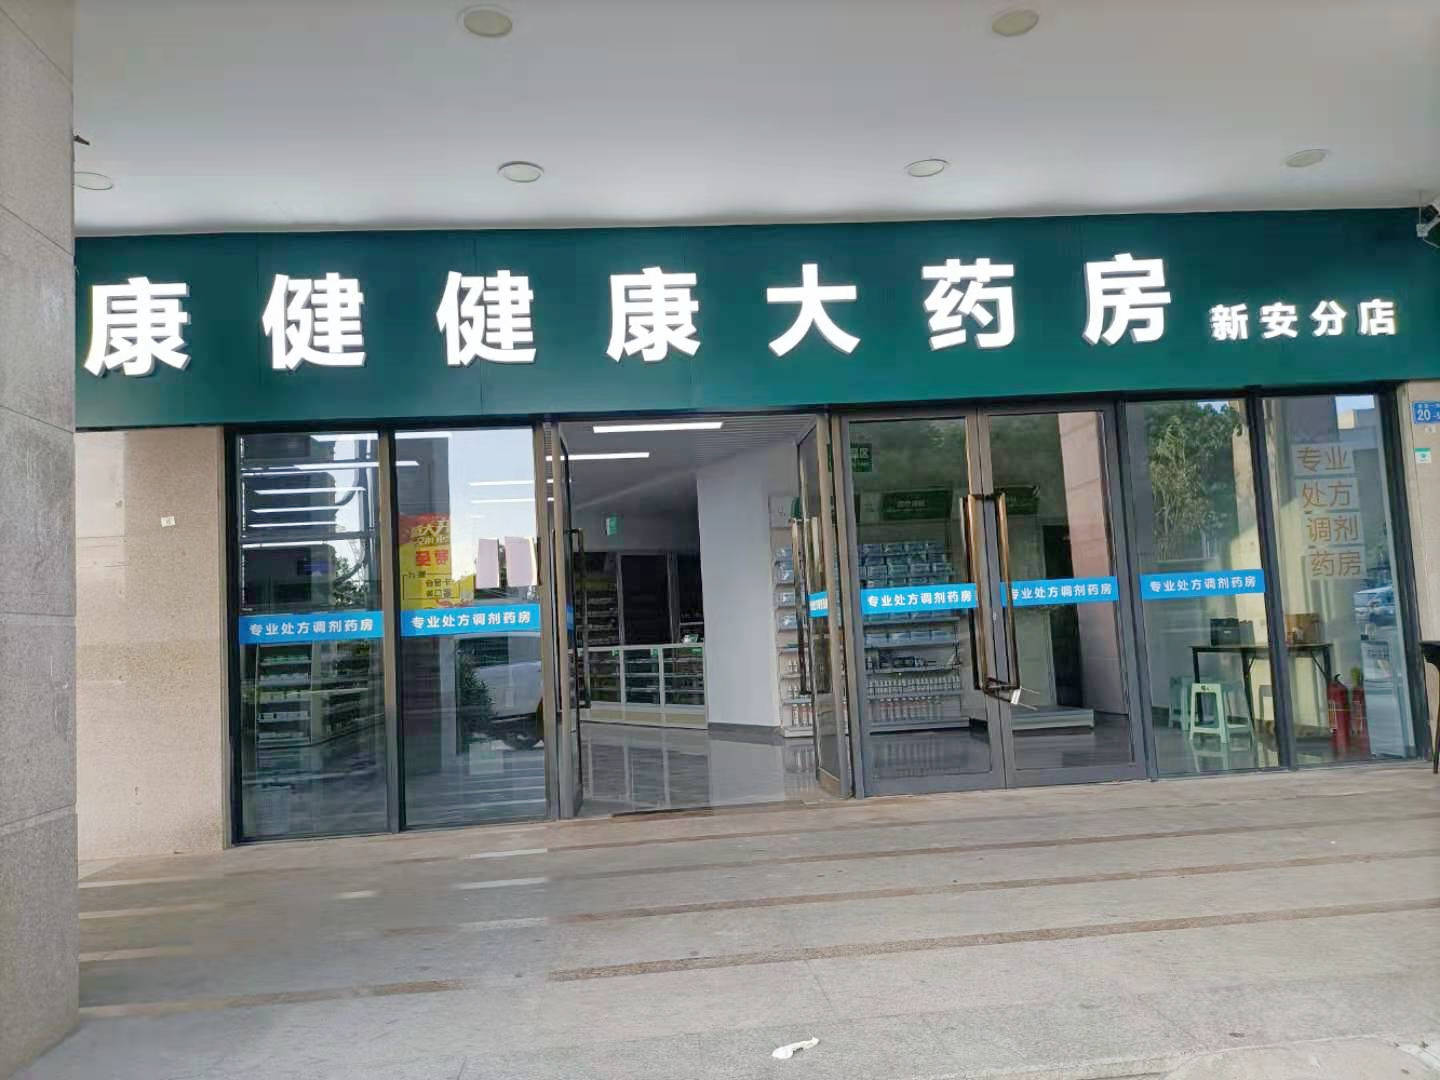 落地深圳,成为南方医科大学深圳分院周边,最新试营业的专业dtp药店